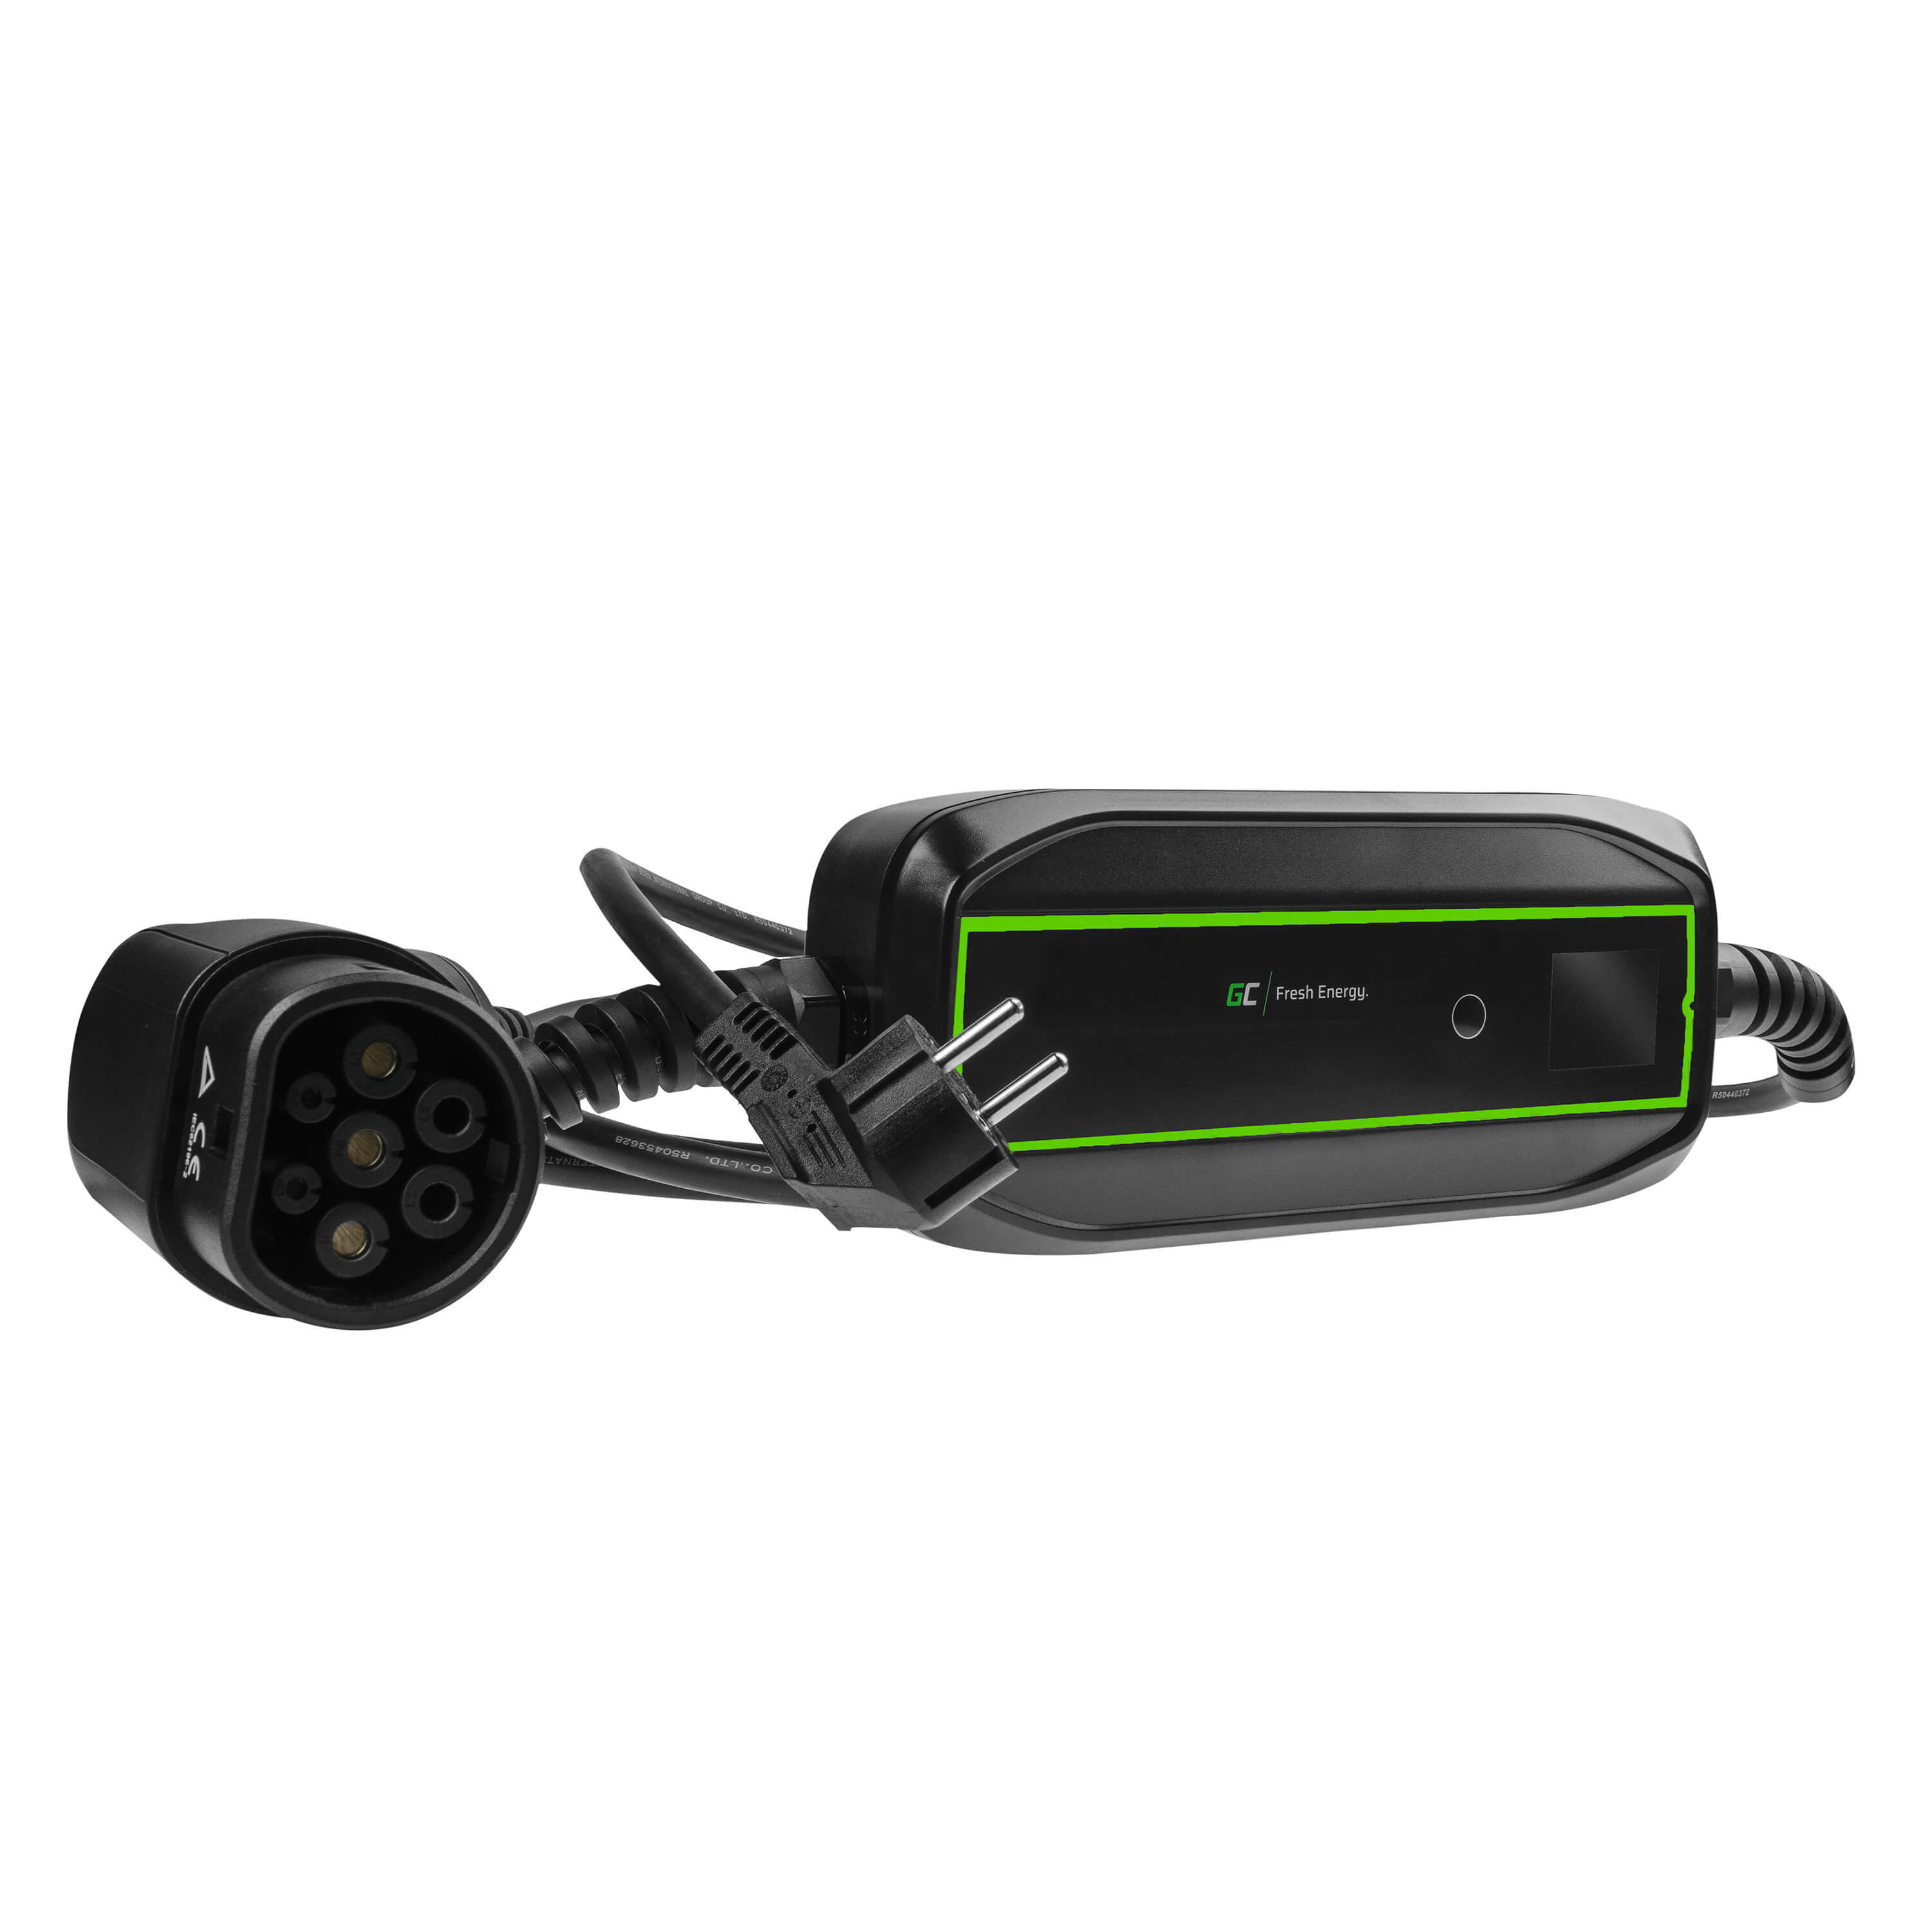 *GC EV PowerCable 3,6kW Schuko – mobilní nabíječka typu 2 pro nabíjení elektromobilů a hybridů typu Plug-In